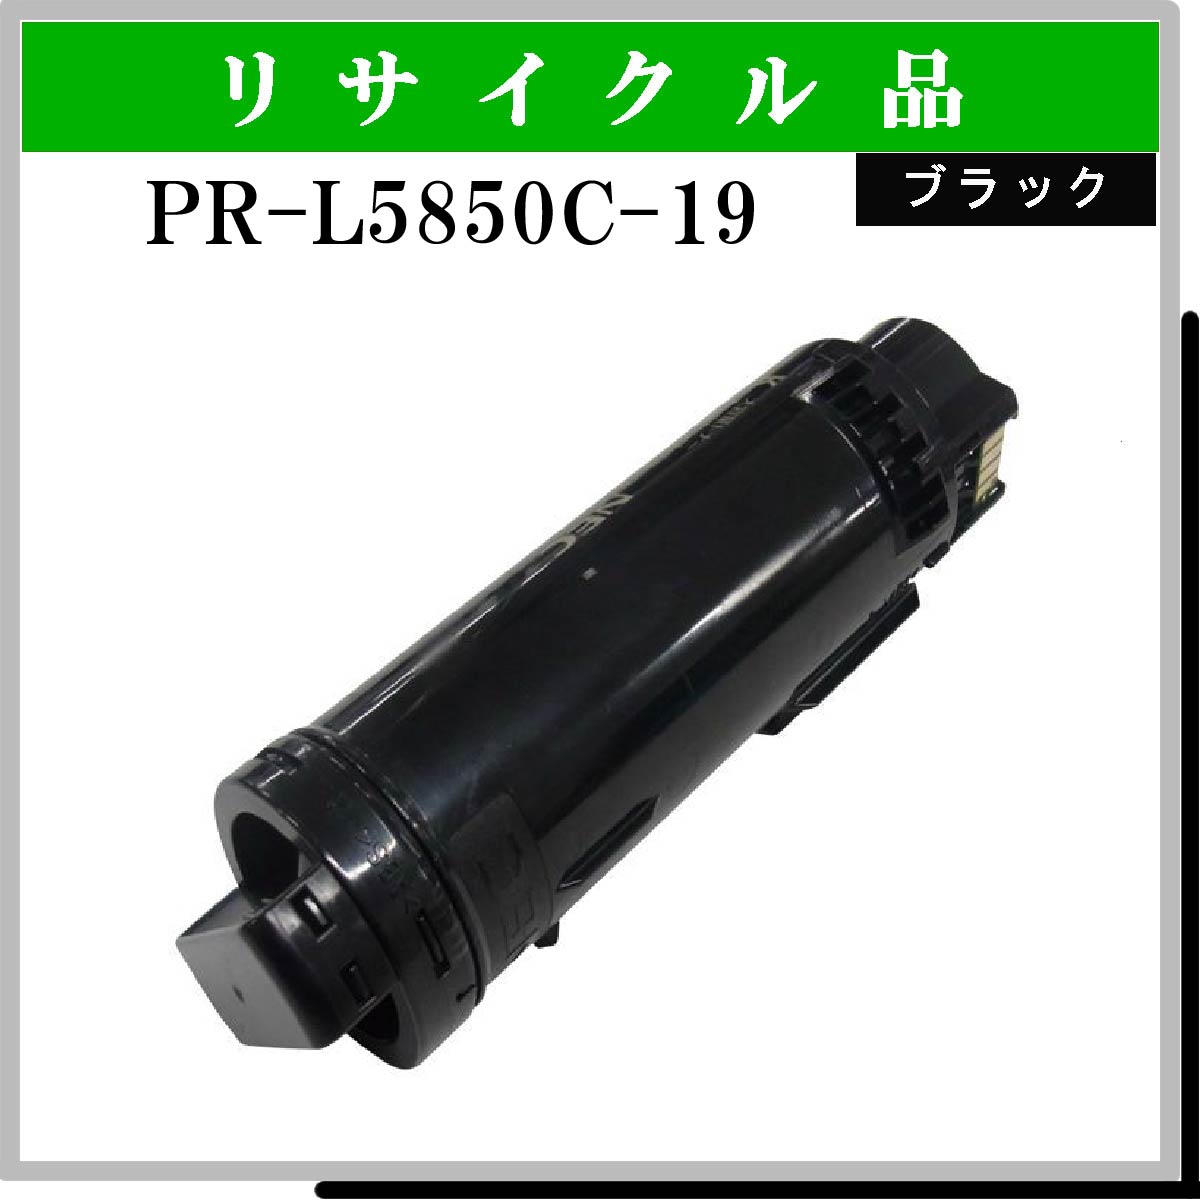 PR-L5850C-19